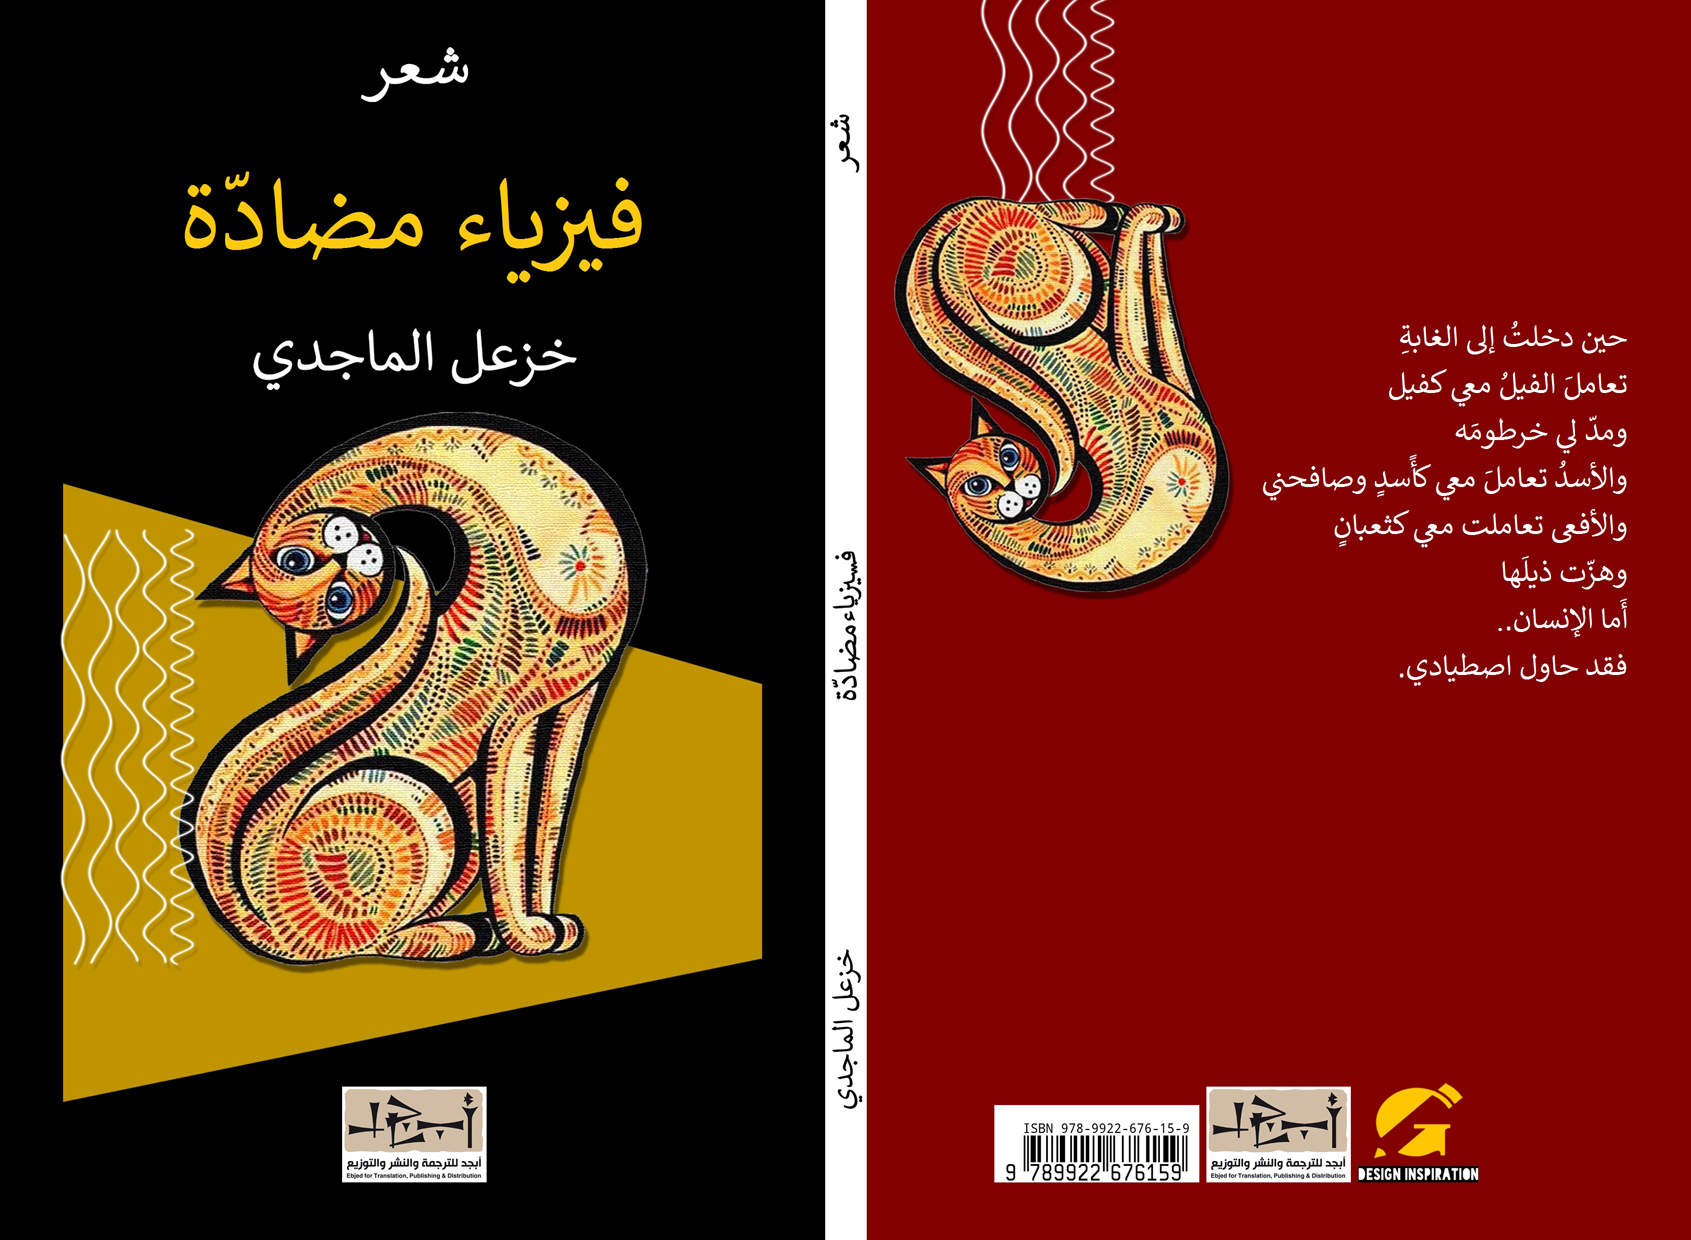 اسم الكتاب: فيزياء مضادة  تأليف: د. خزعل الماجدي